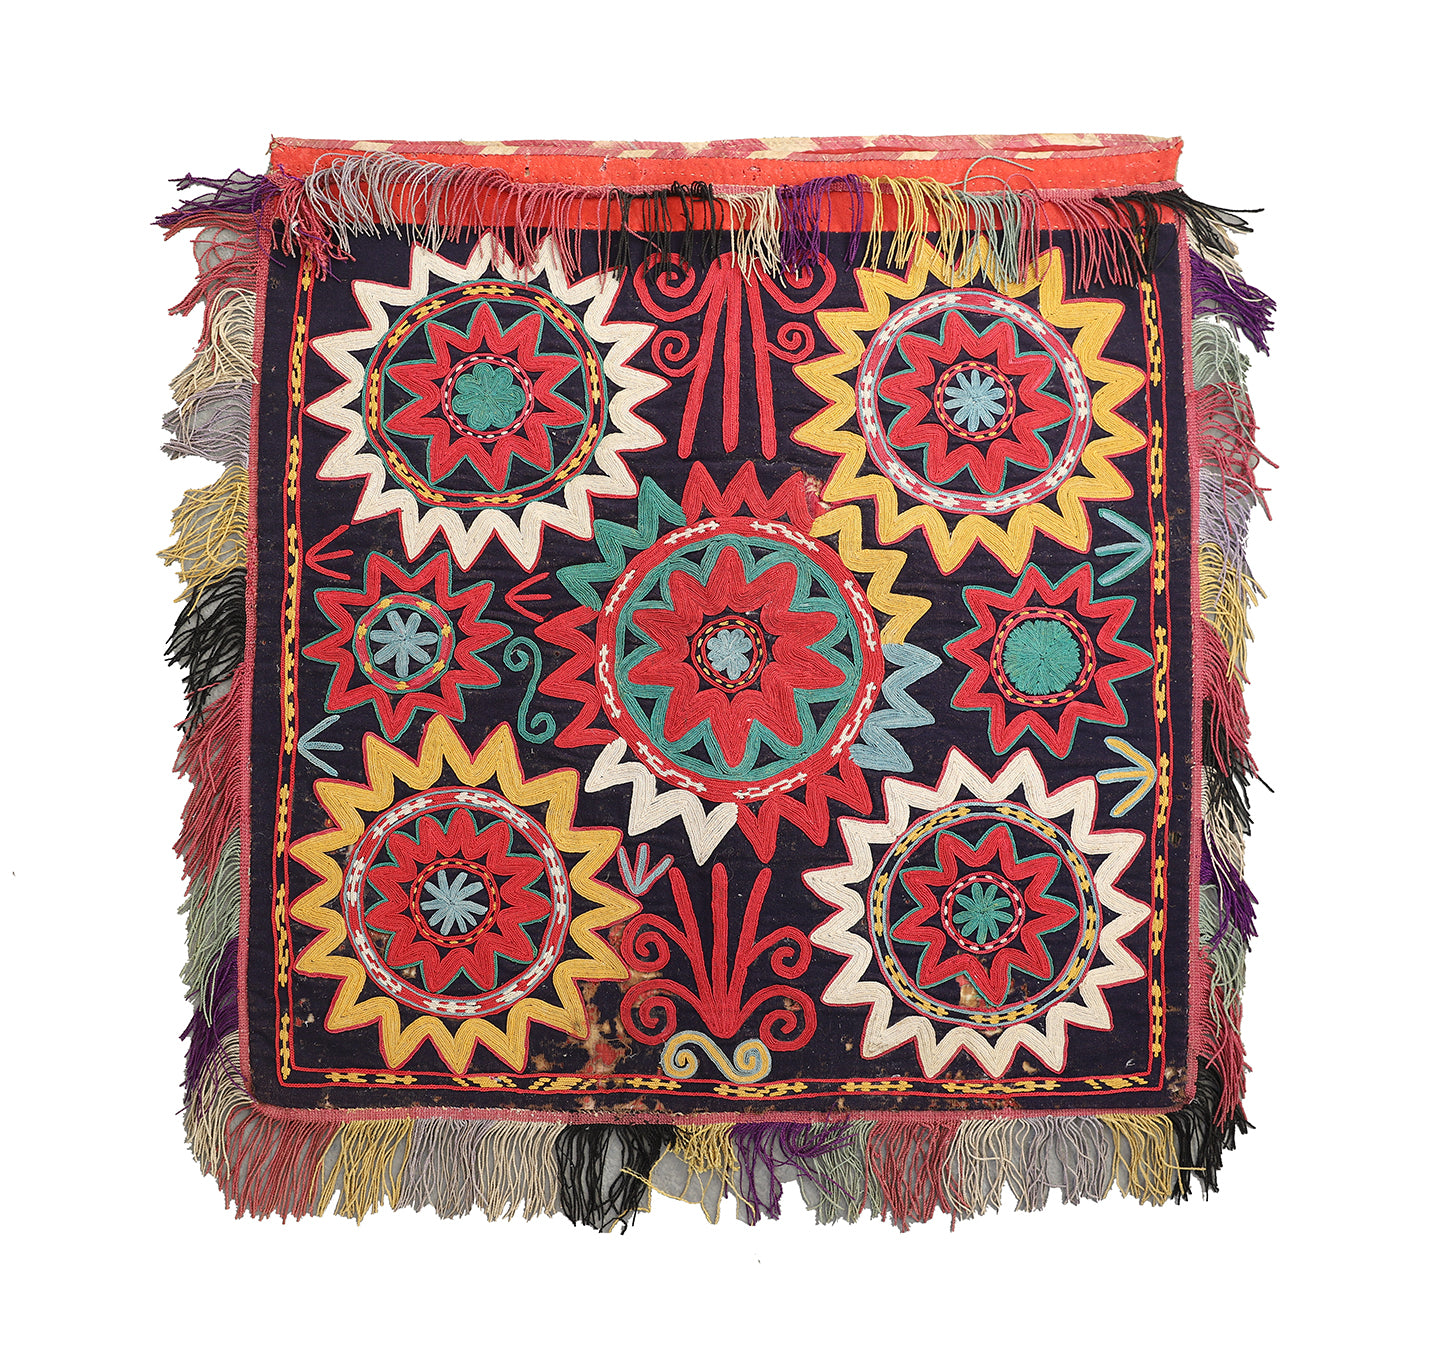 2'x2' Antique Afghan Uzbek Laqai Hand Embroidery Decorative Textile